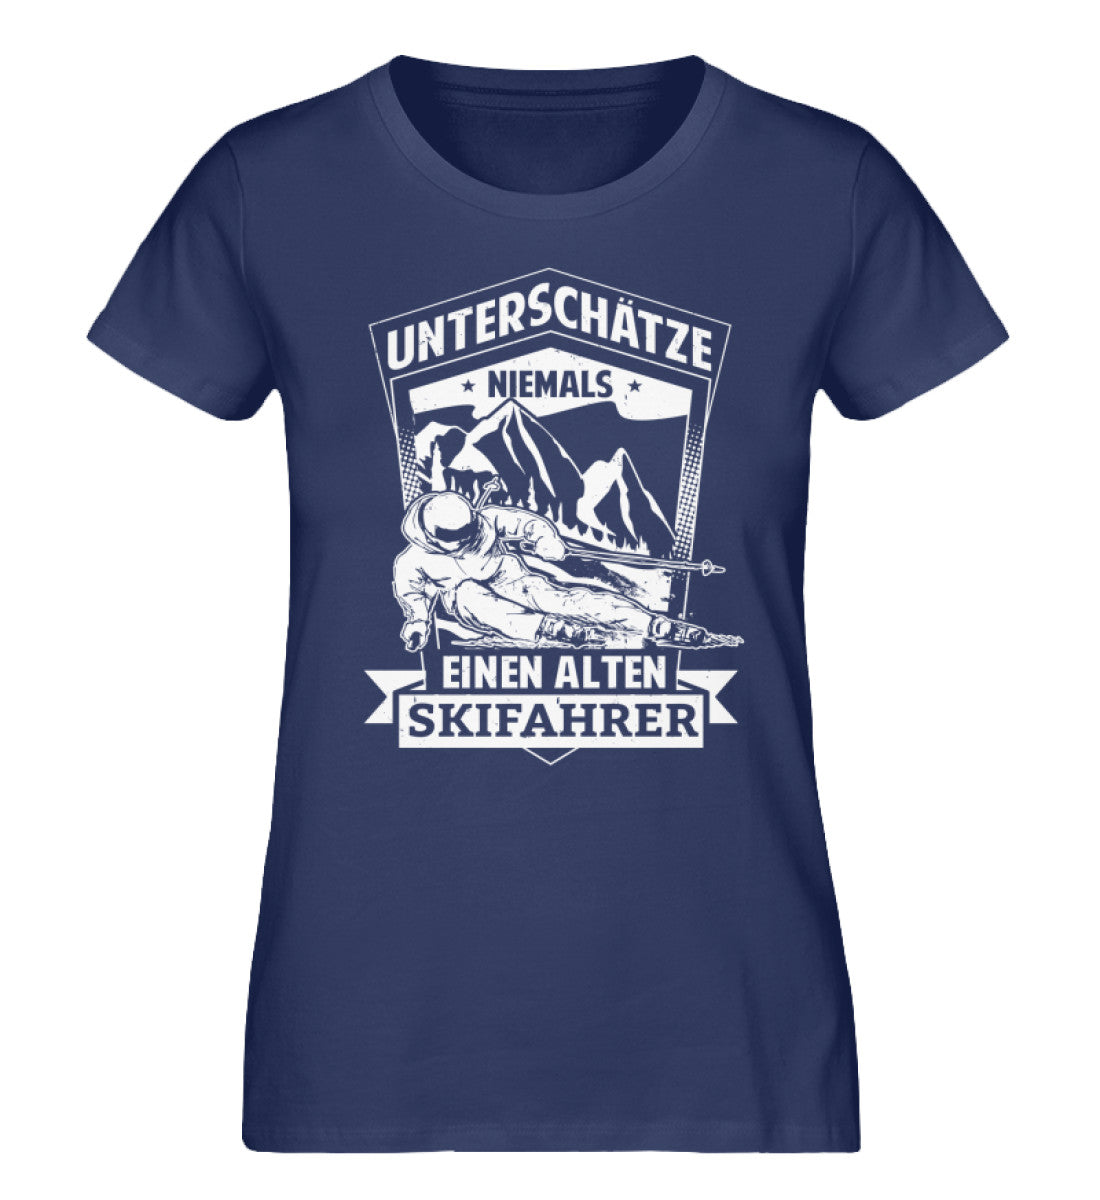 Unterschätze niemals nen alten Skifahrer - Damen Organic T-Shirt-BERGLUST